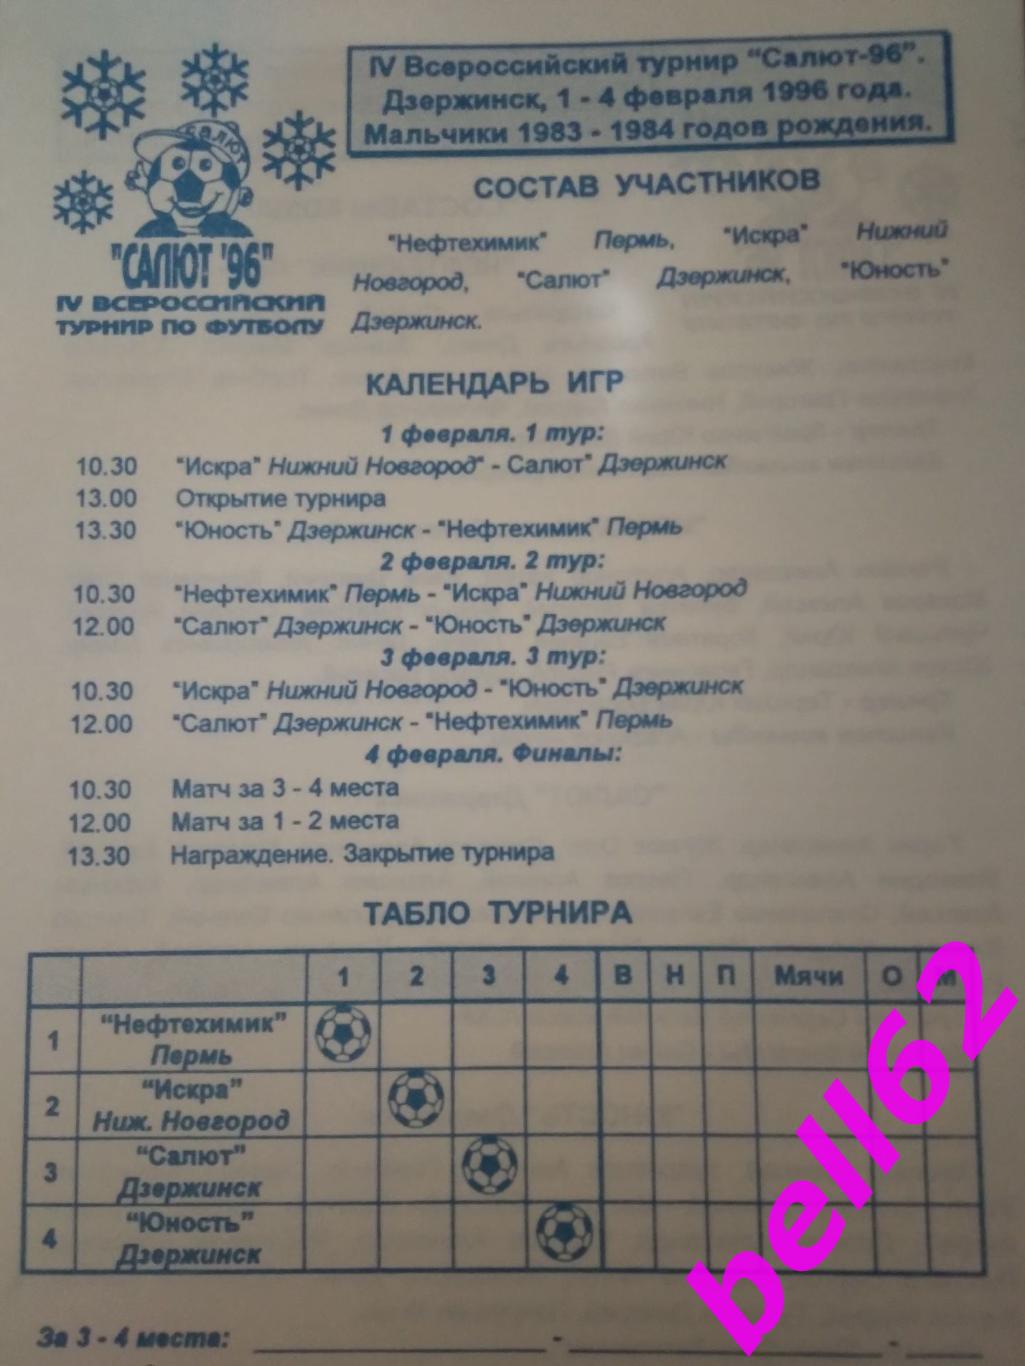 Всероссийский турнир по футболу, Дзержинск, Н. Новгород, Пермь-1996 г. 1